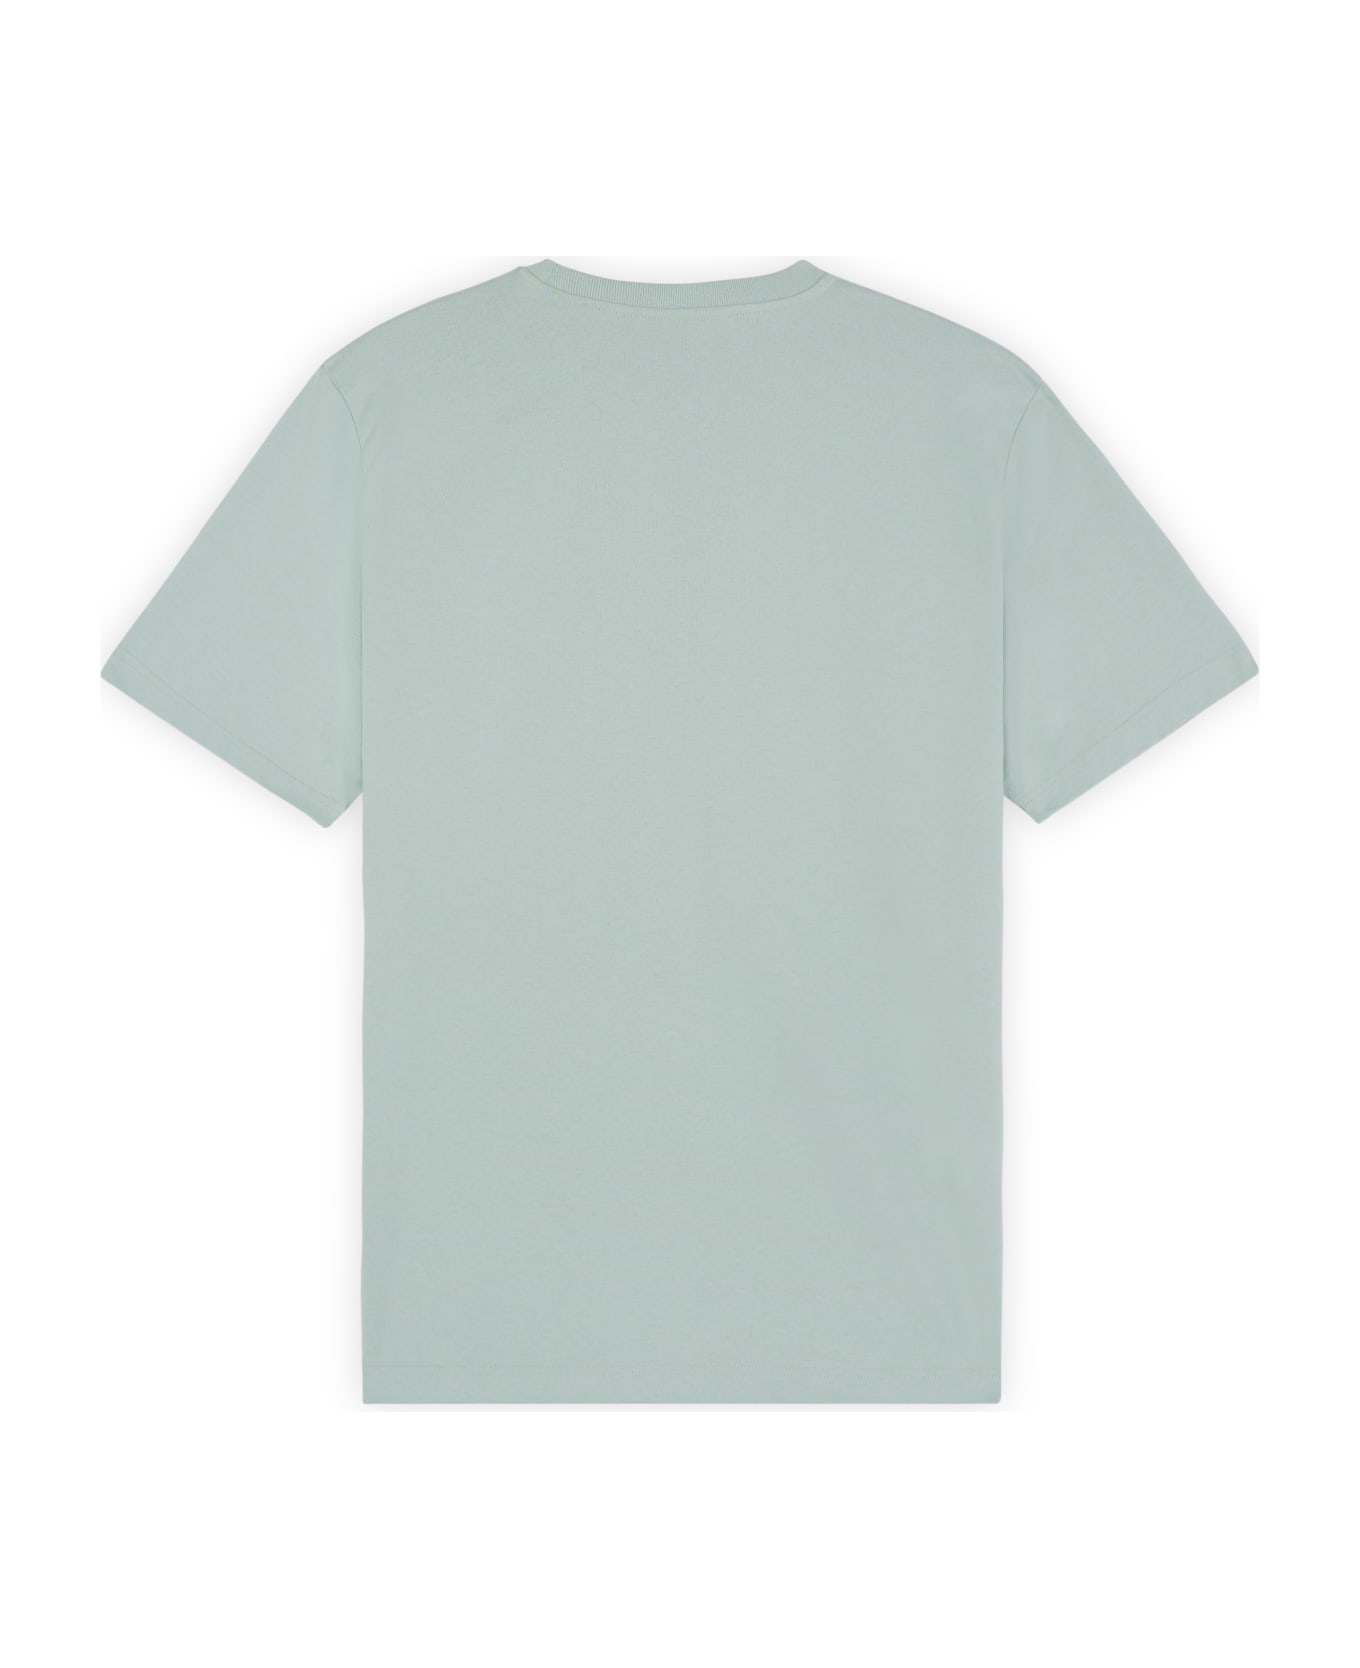 Maison Kitsuné Surfing Foxes Comfort Tee-shirt - Seafoam Blue シャツ